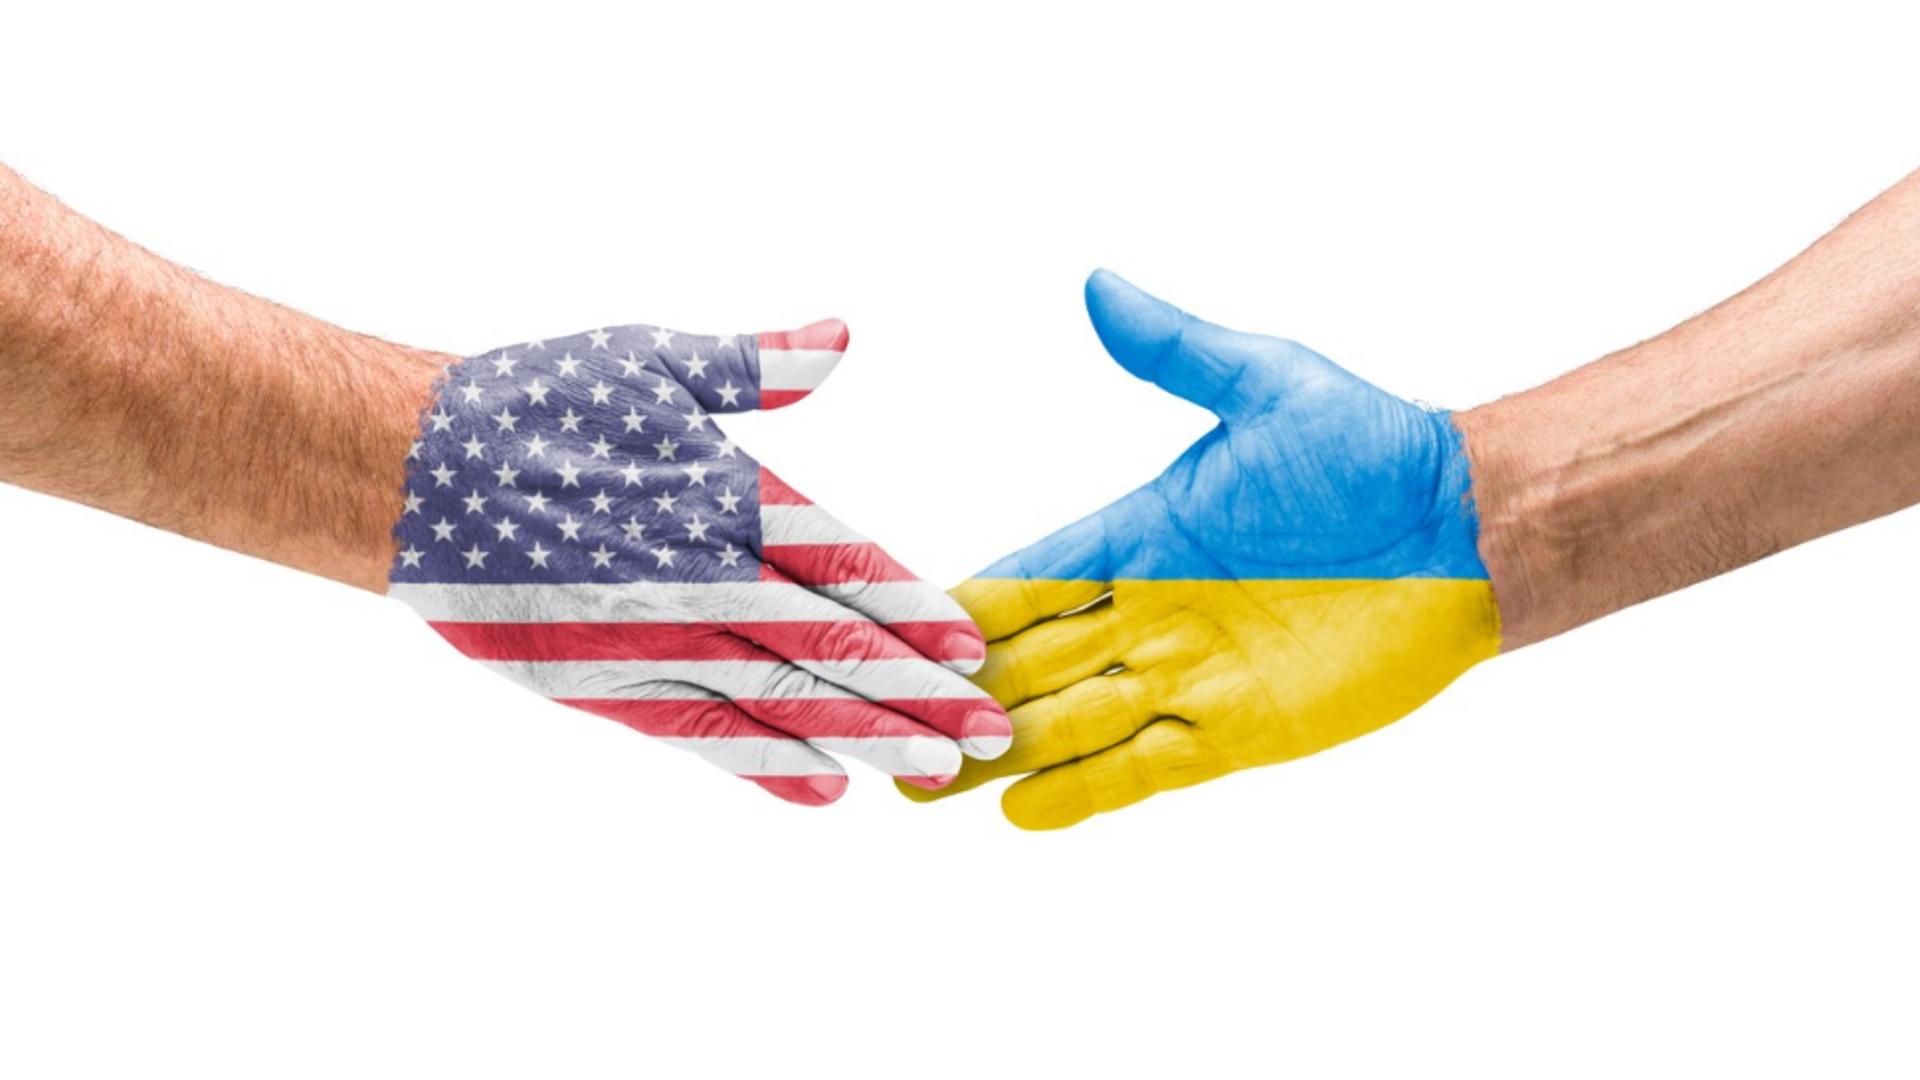 SUA condiționează ajutoarele militare trimise Ucrainei. Foto/Profimedia